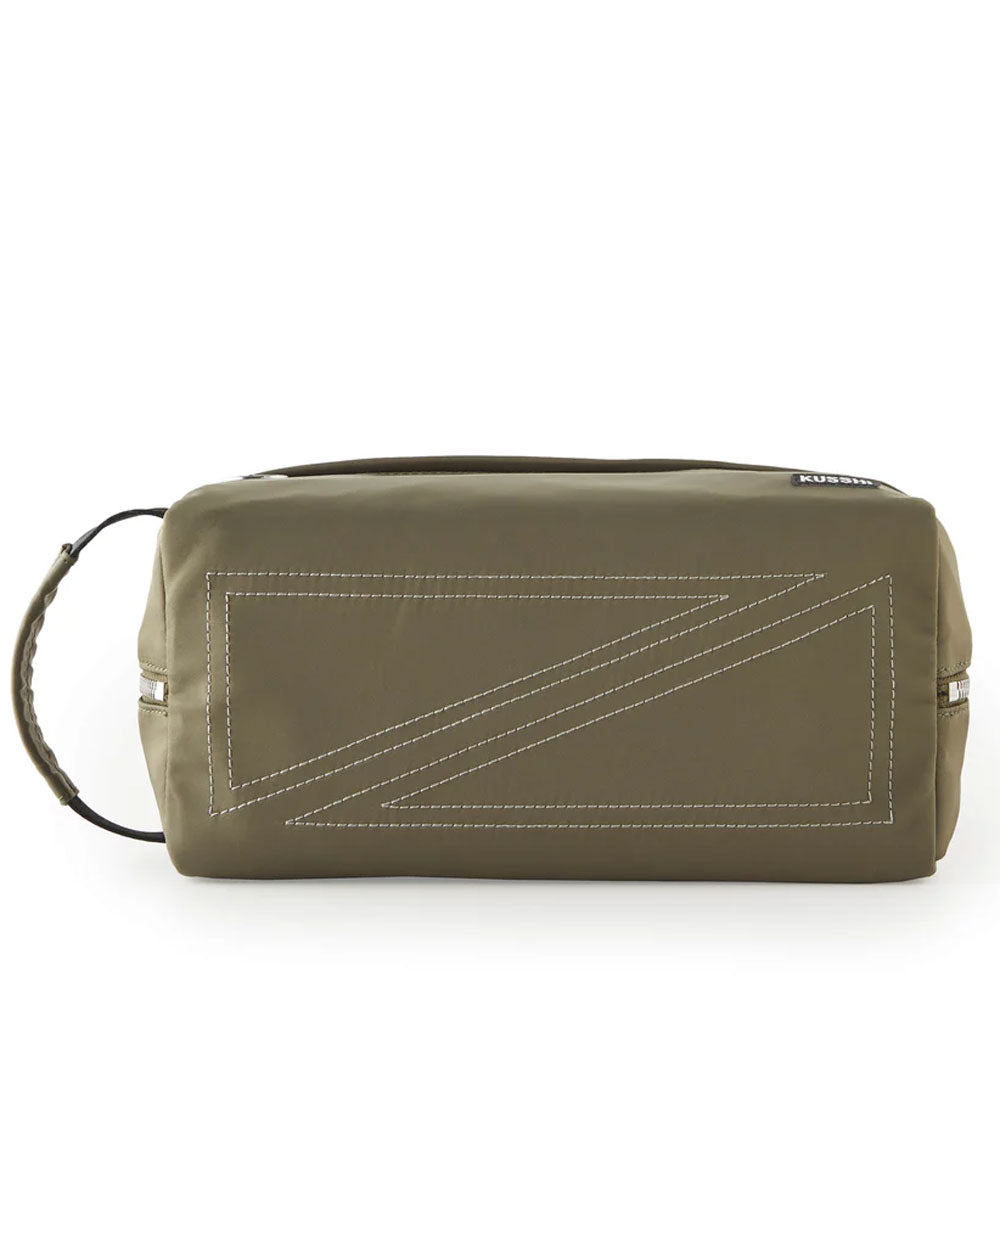 Dopp Kit Bag in Olive Green